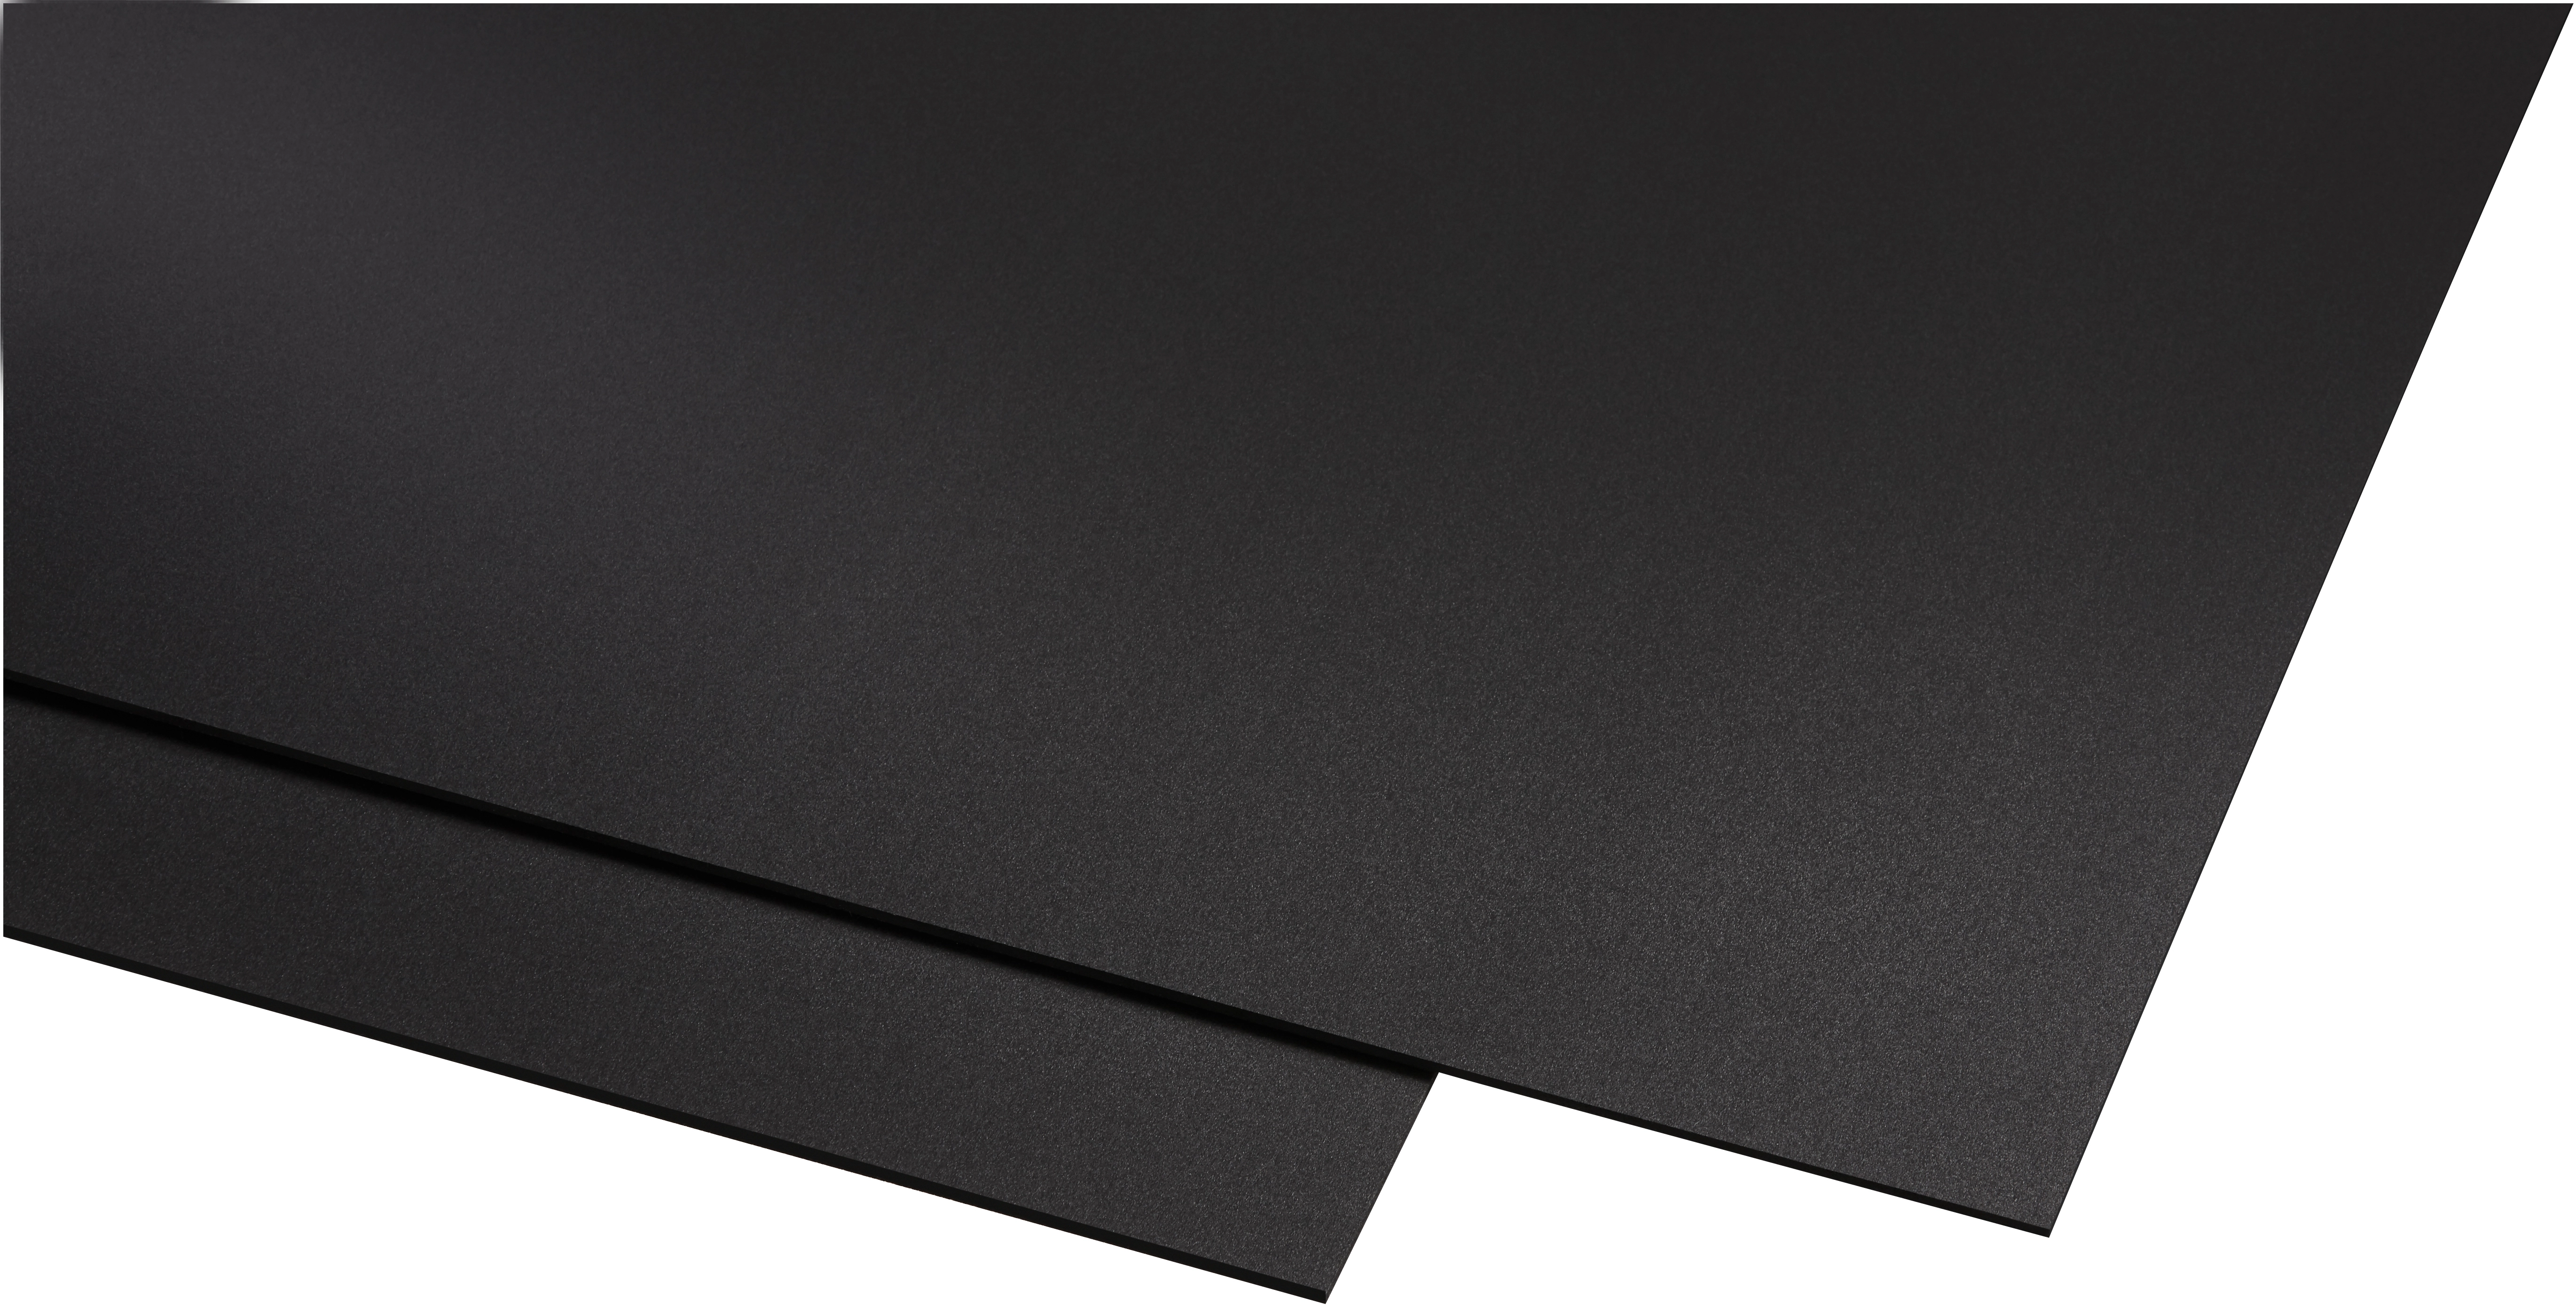 Kunststoffplatte Polystyrol 0,5mm - 3mm schwarz Modellbau Basteln